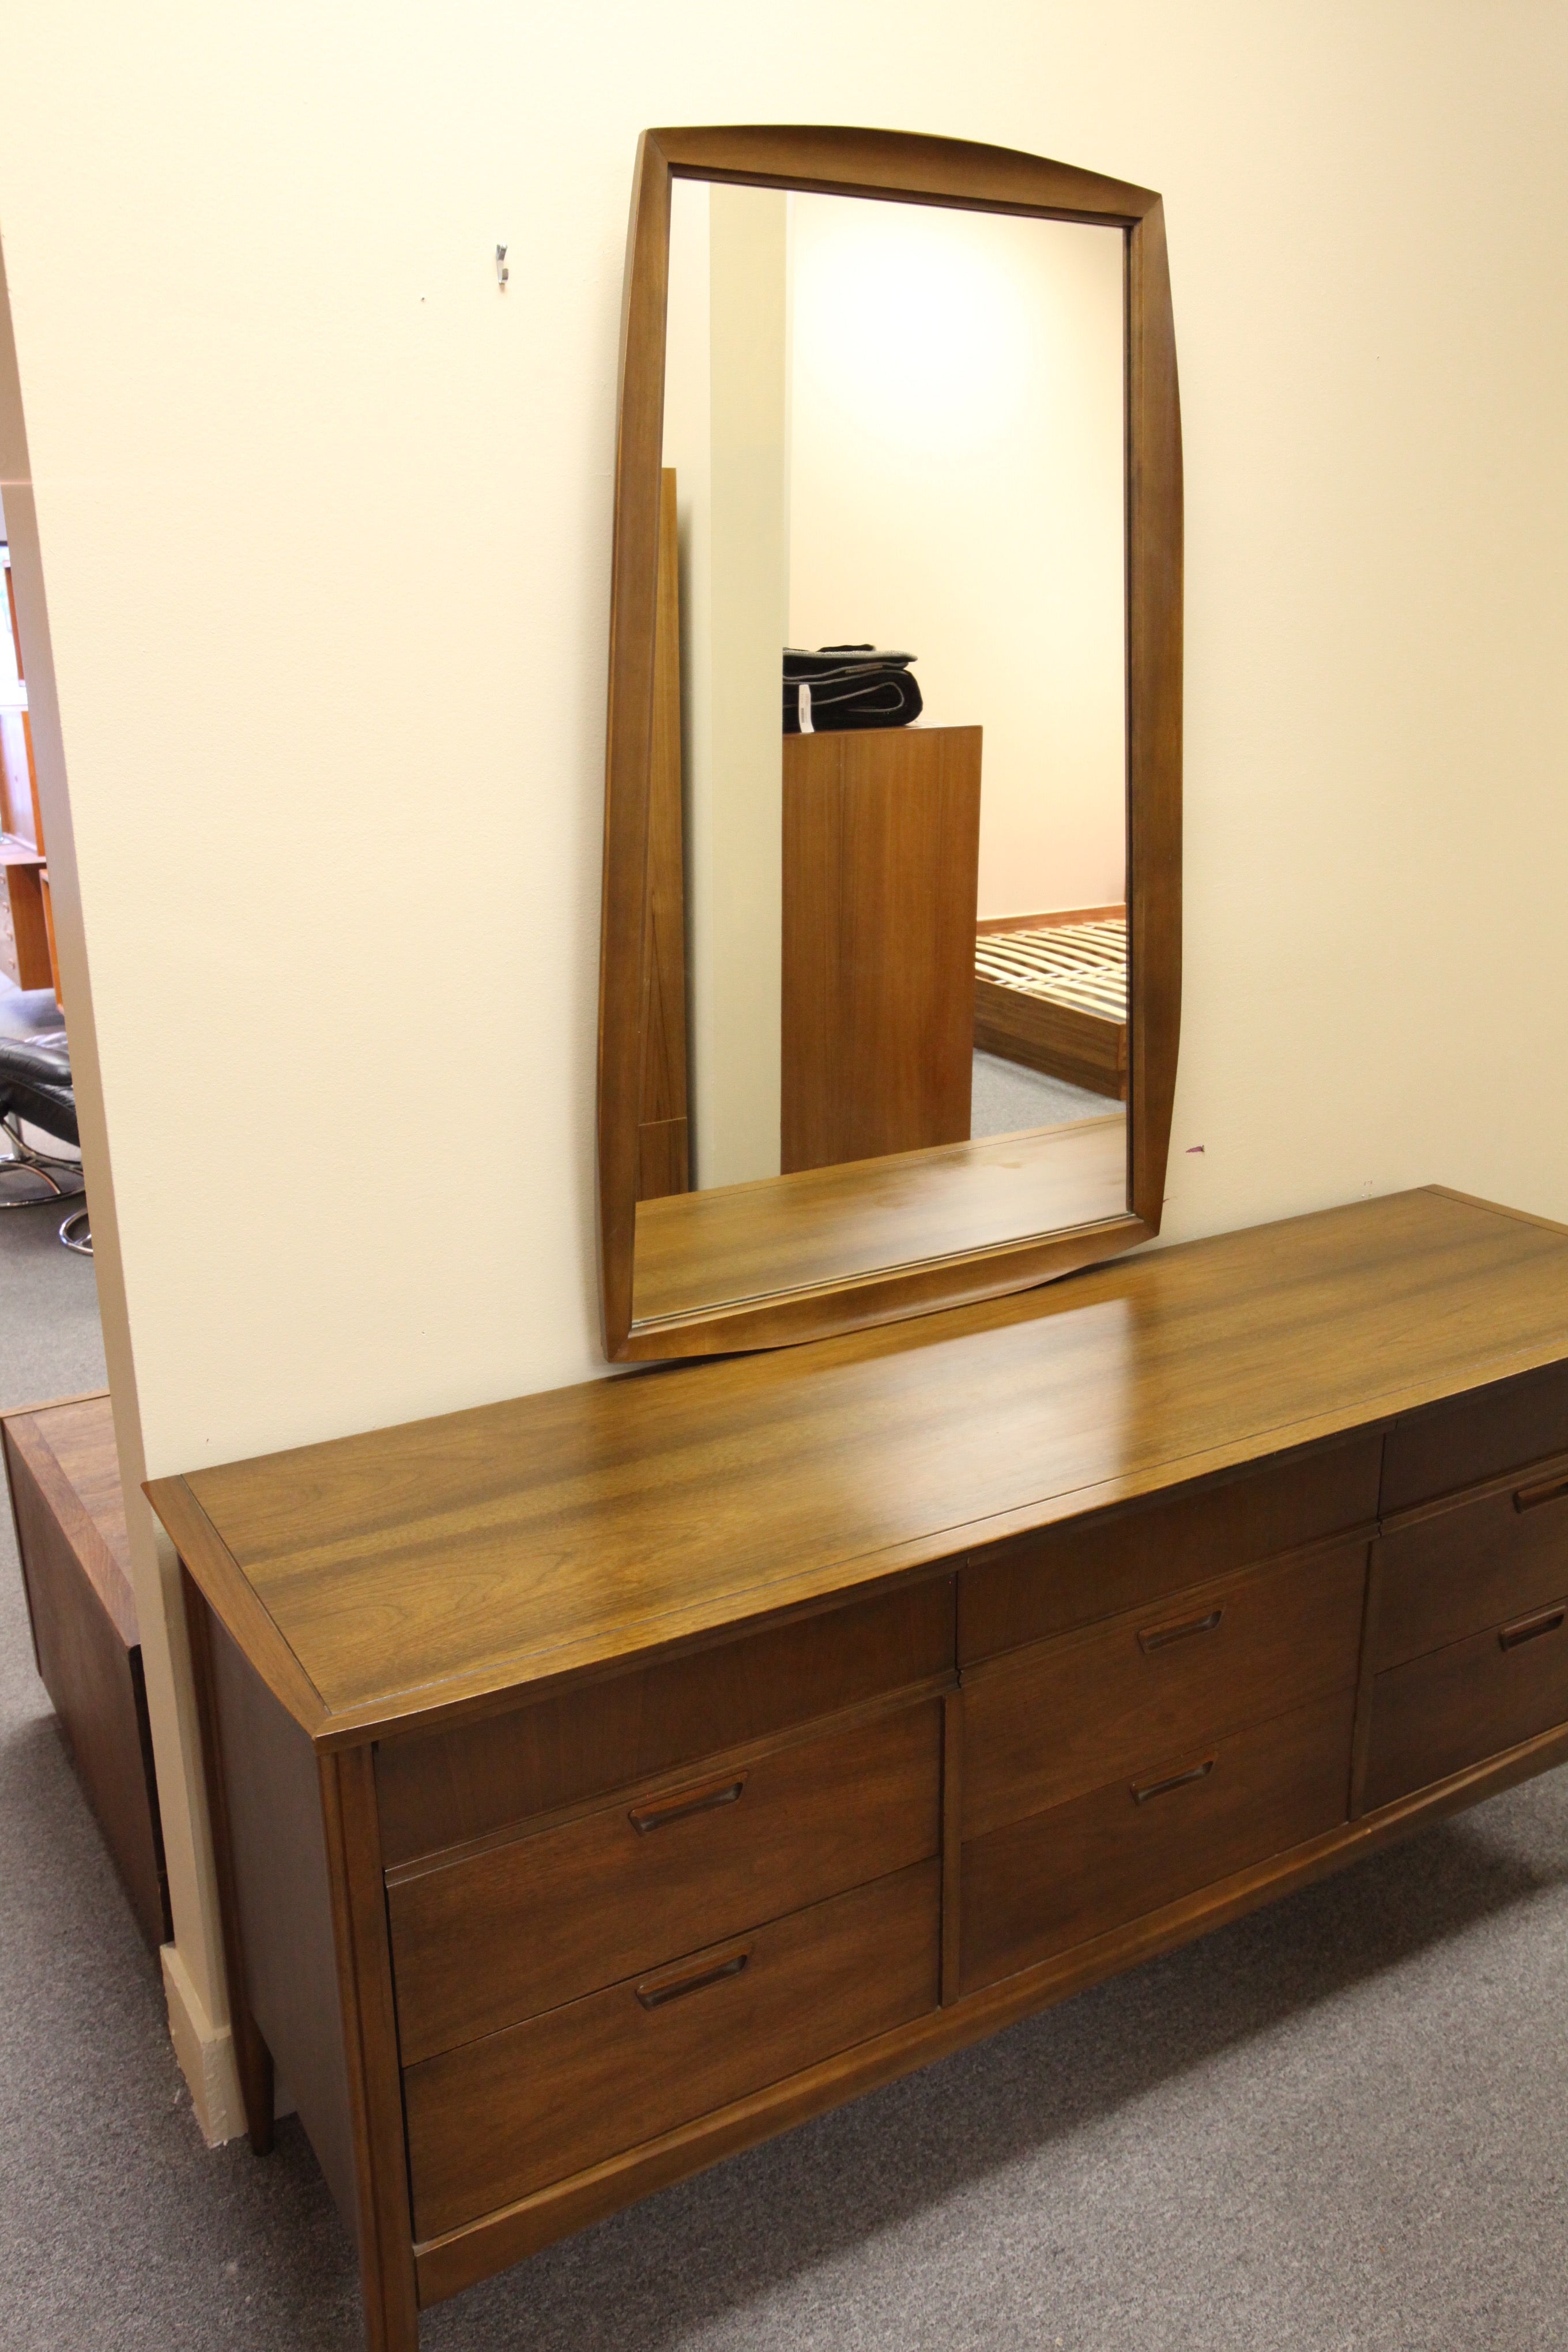 9 Drawer Walnut Dresser and Mirror (68.75" x 30.25" x 20"D)